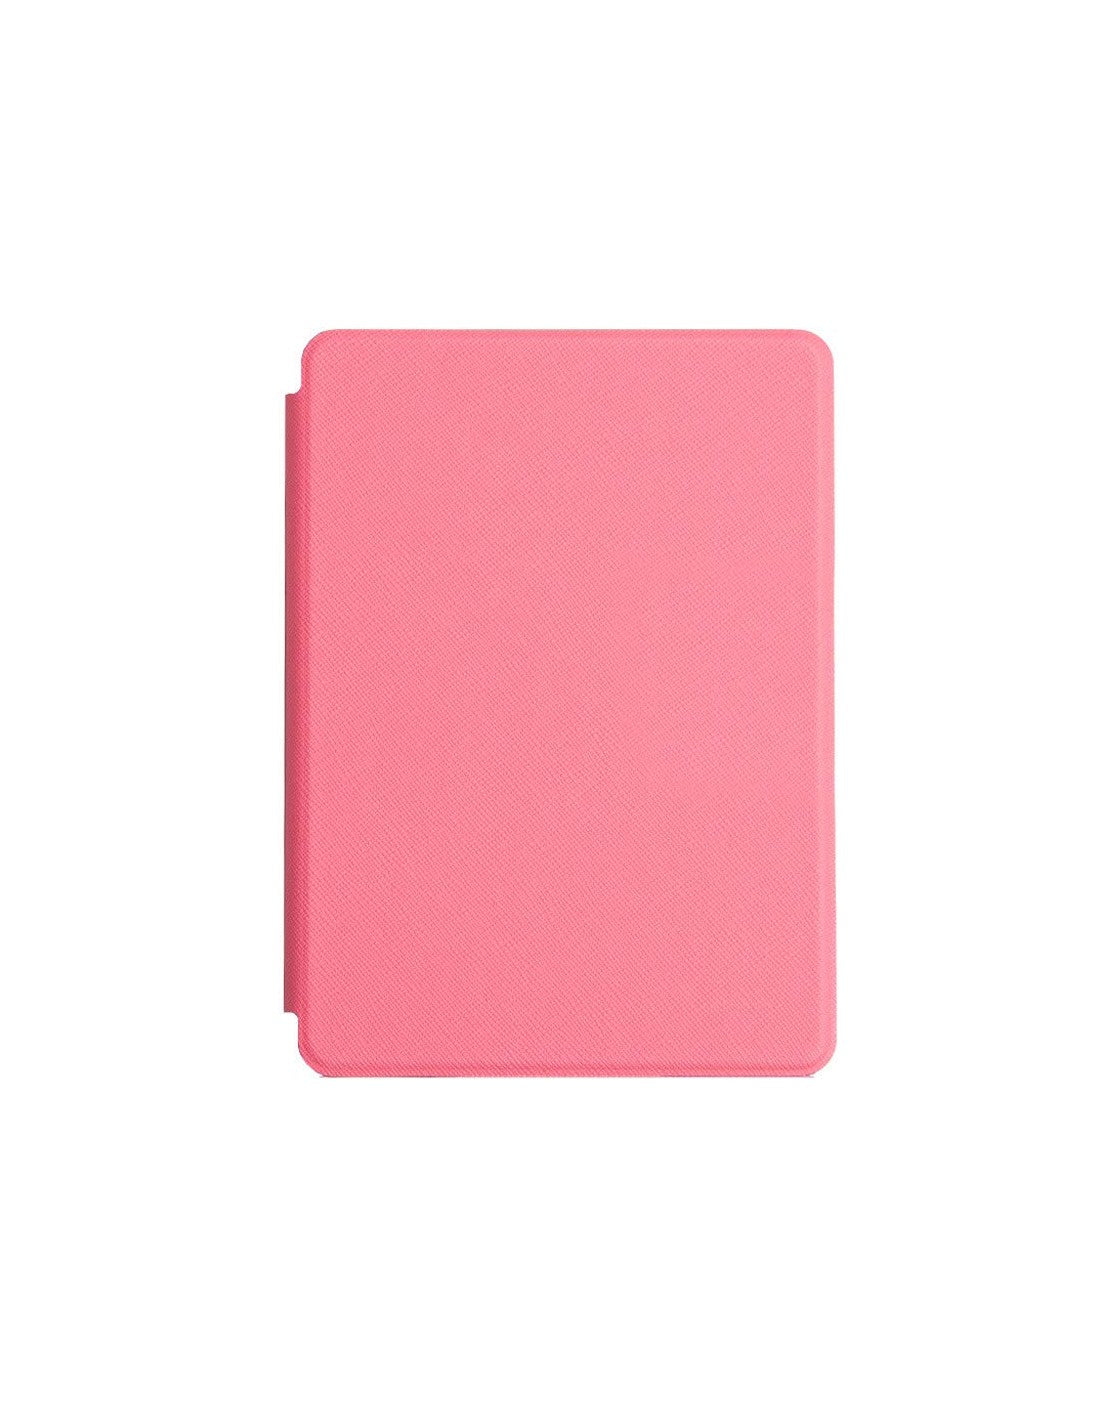  Funda de cuero para Kindle Paperwhite, color rosa fucsia - no es  compatible con la versión